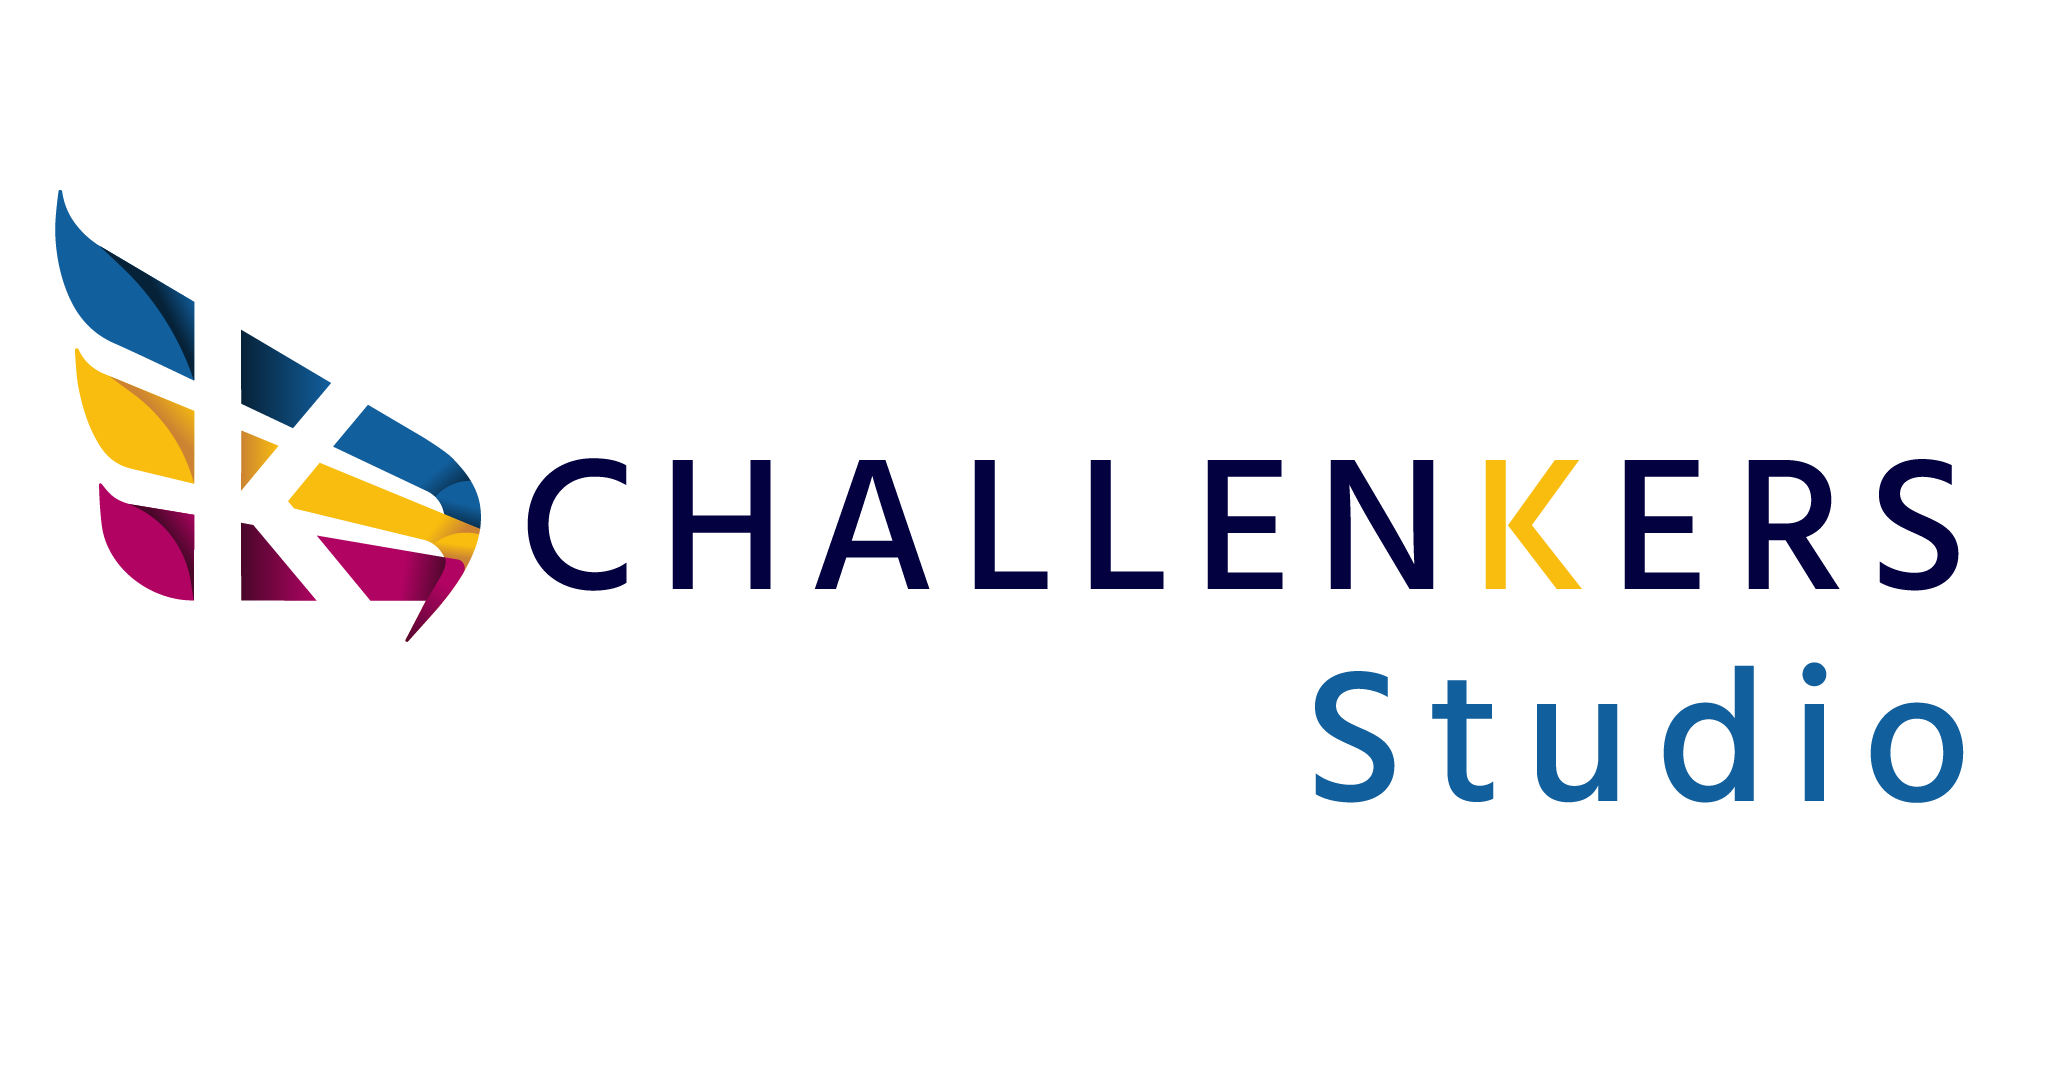 Challenkers studio plateforme Hackathon et challenge